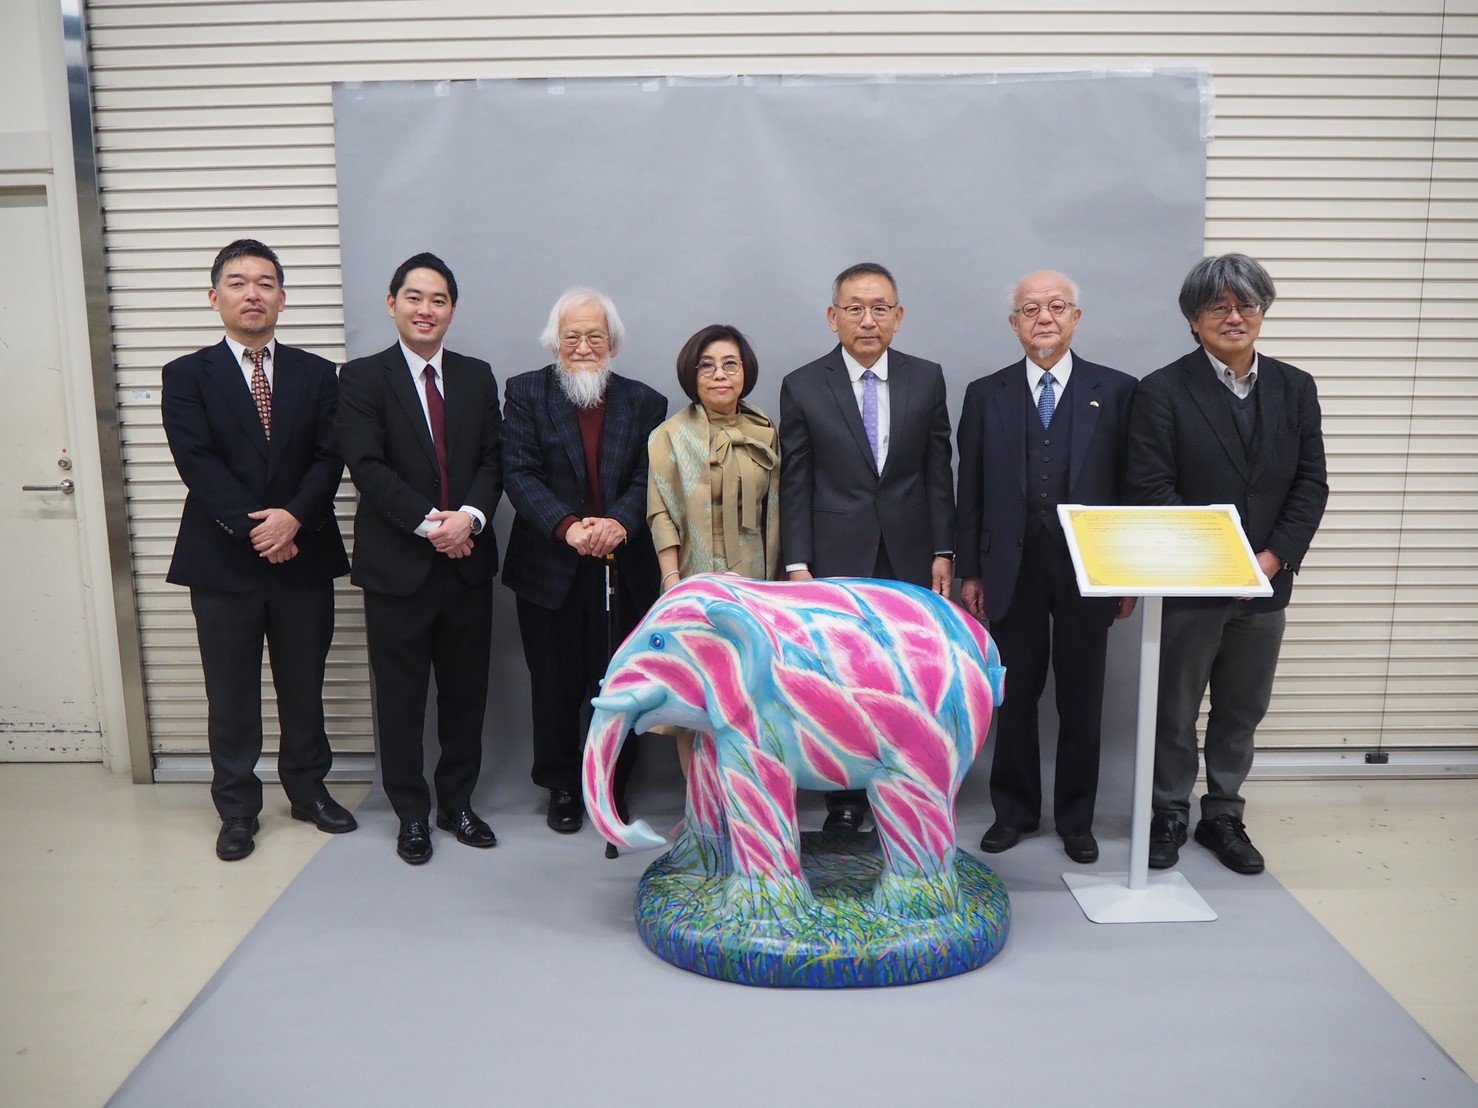  มอบ “ช้างศิลป์เชียงราย”  ให้กับ พิพิธภัณฑ์ชาติพันธุ์วิทยา (National Museum of Ethnology) โอซาก้า ประเทศญี่ปุ่น 